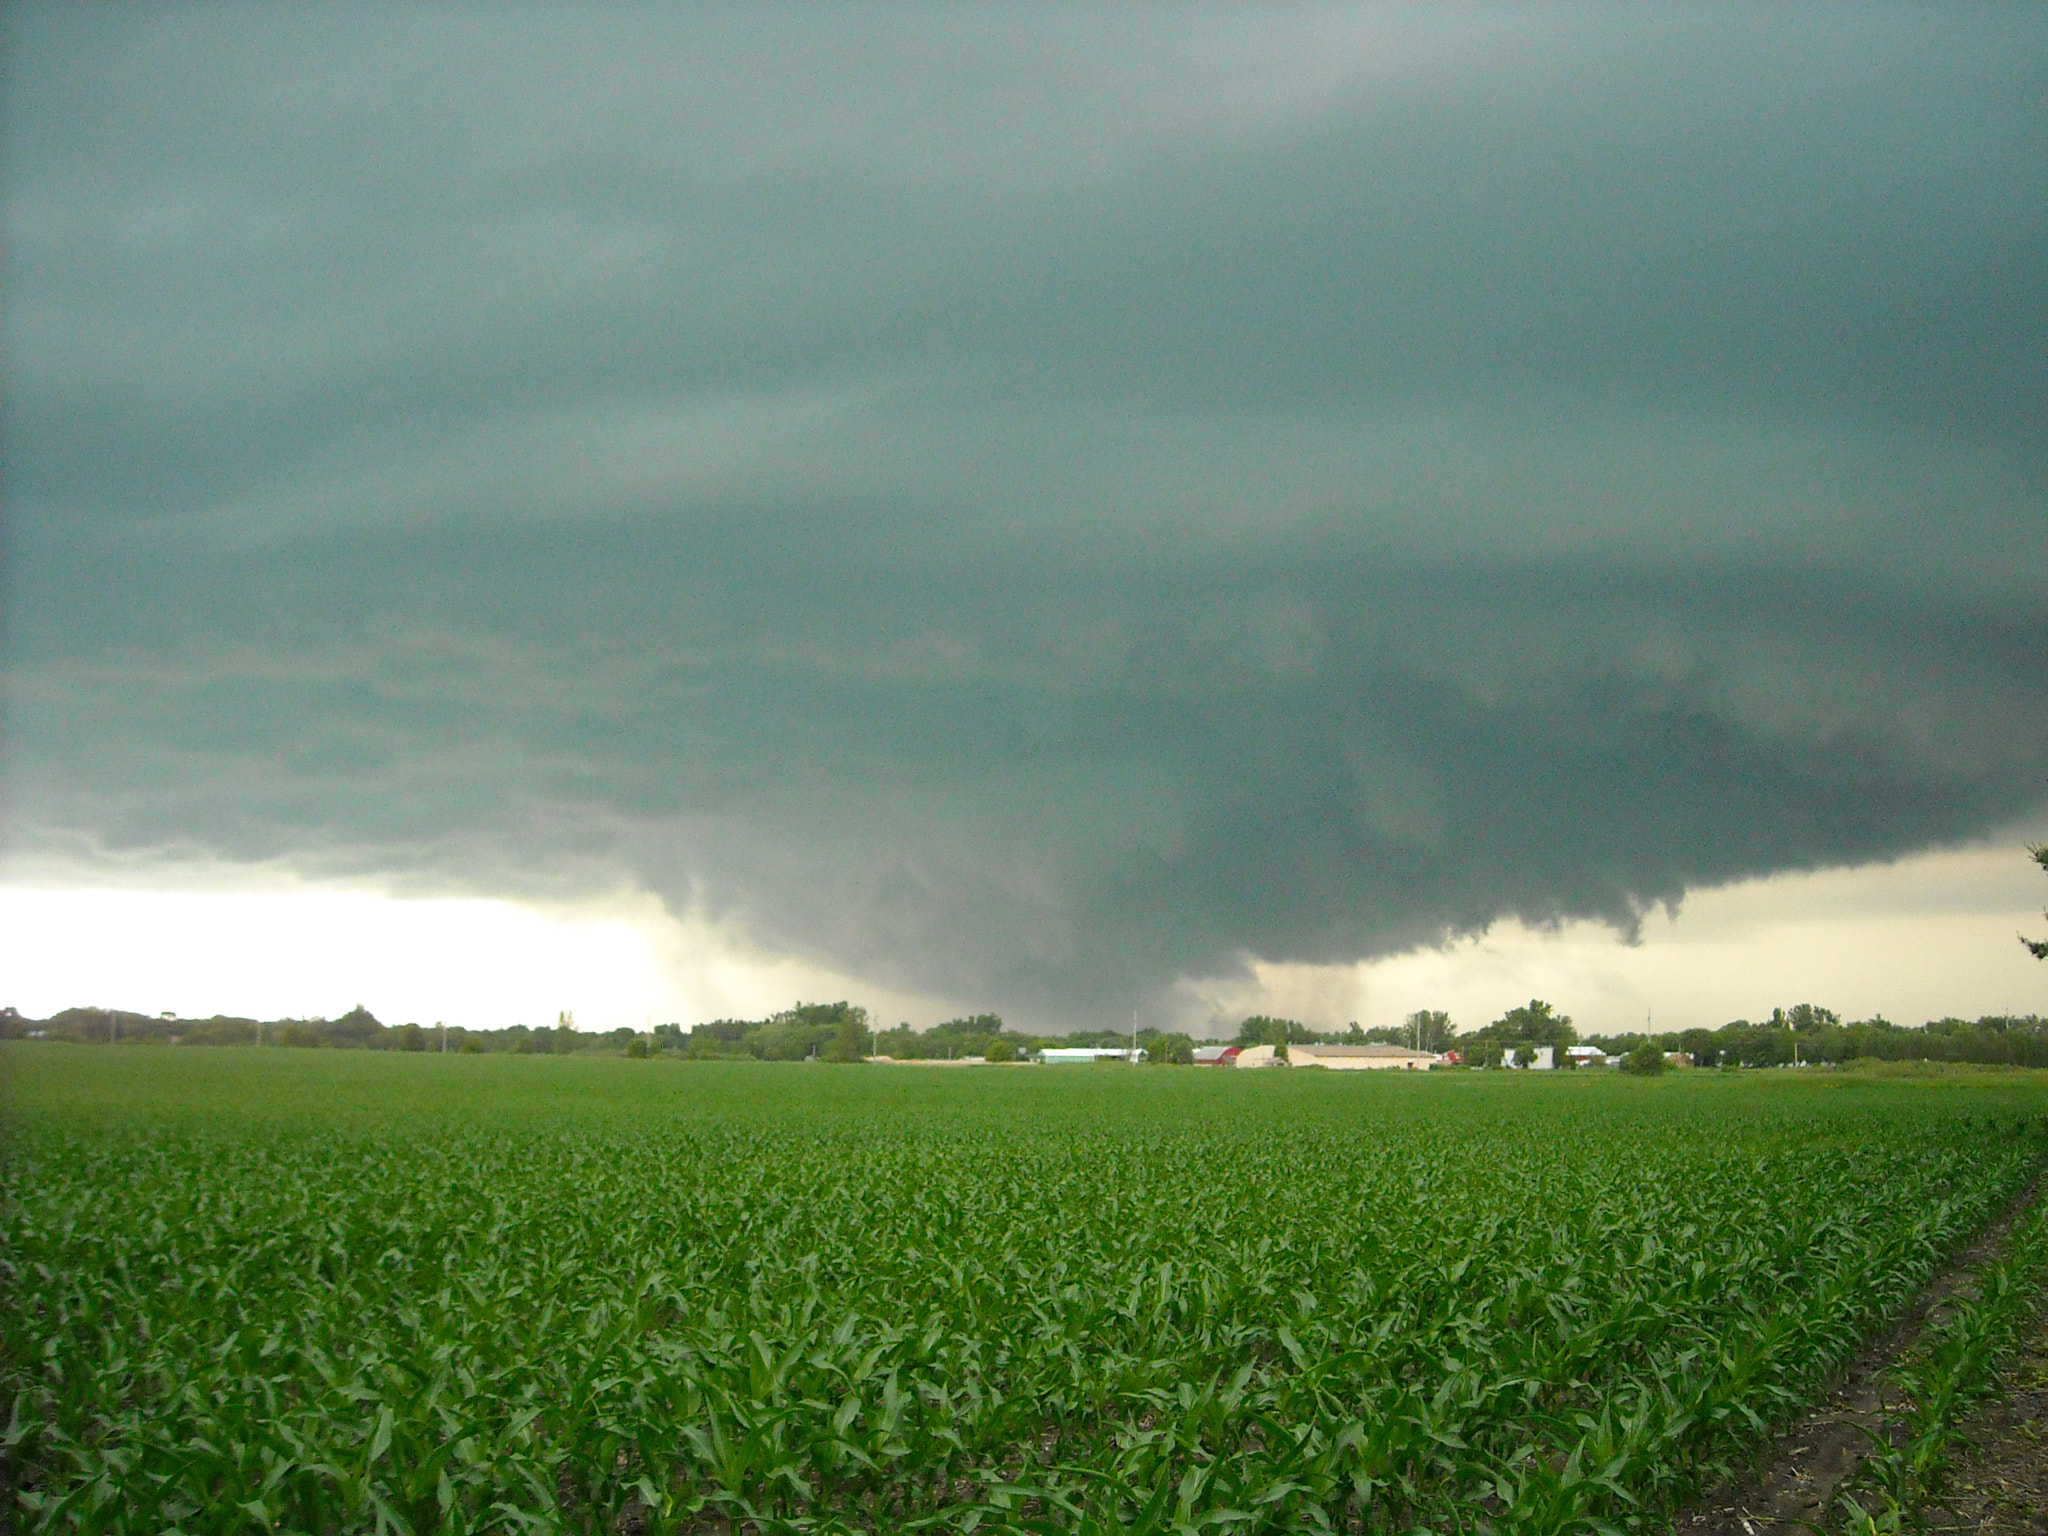 Nikon Coolpix L18 sample photo. Austin, mn 2008 tornado photography